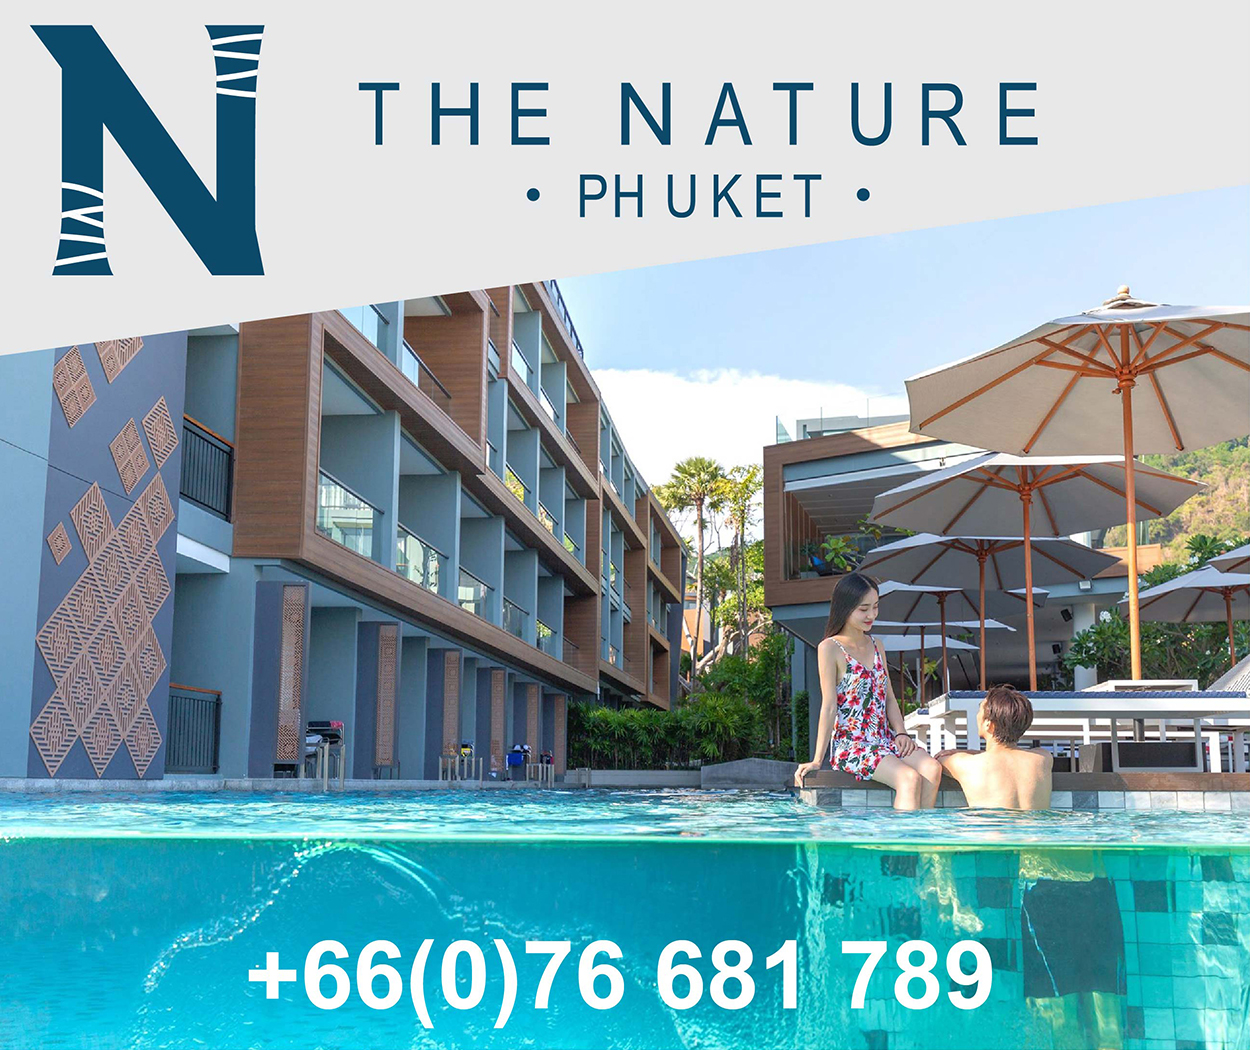 The Nature Phuket